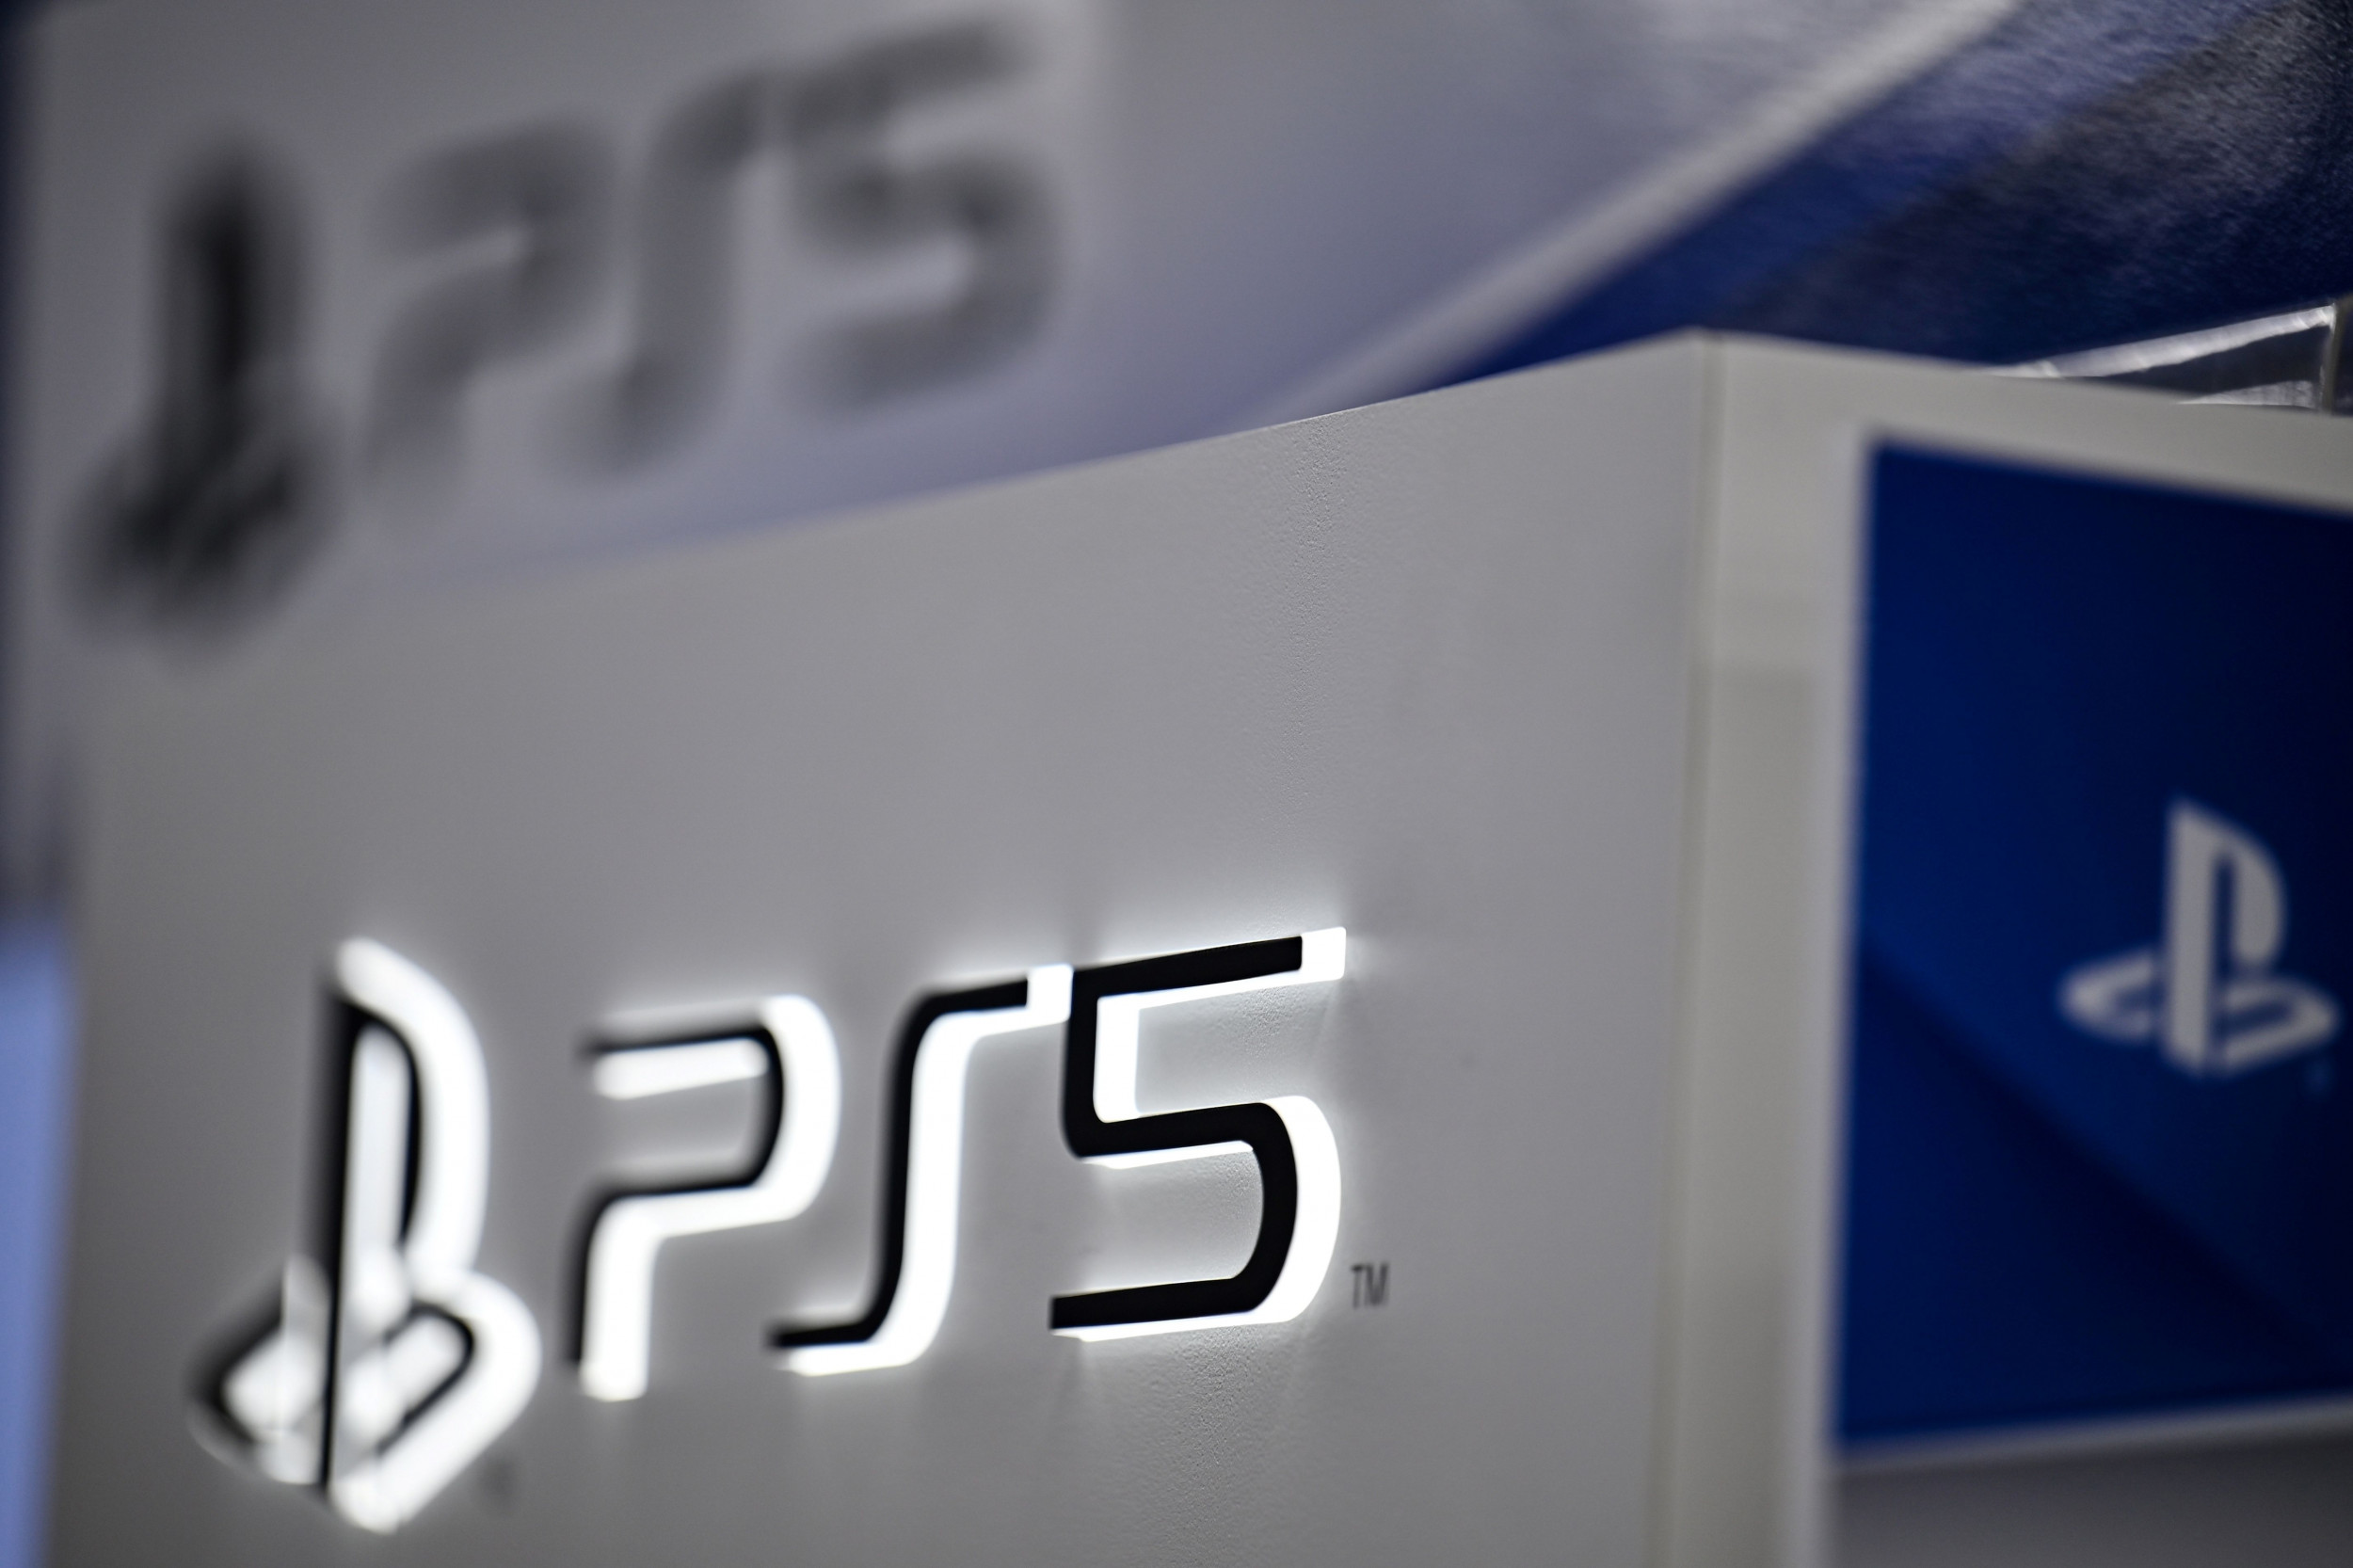 PS5 restock coming for Best Buy Totaltech members